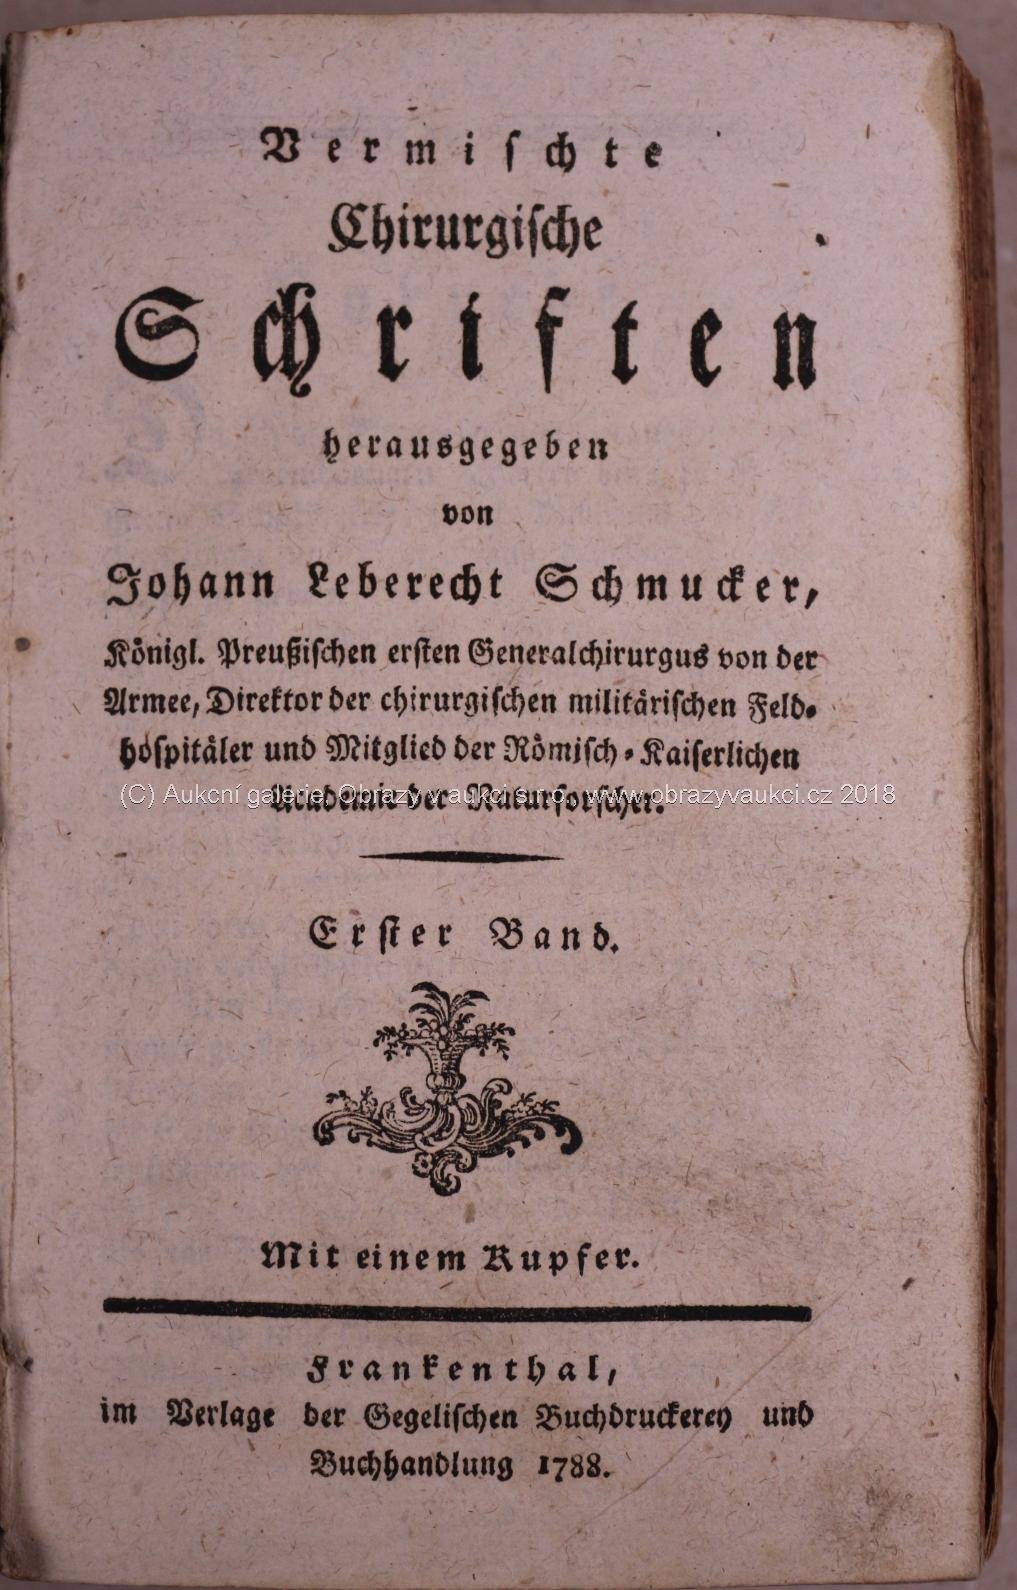 Johann Leberecht Schmuckers - Sammlung der besten medizinischen und chirurgischen Schriften